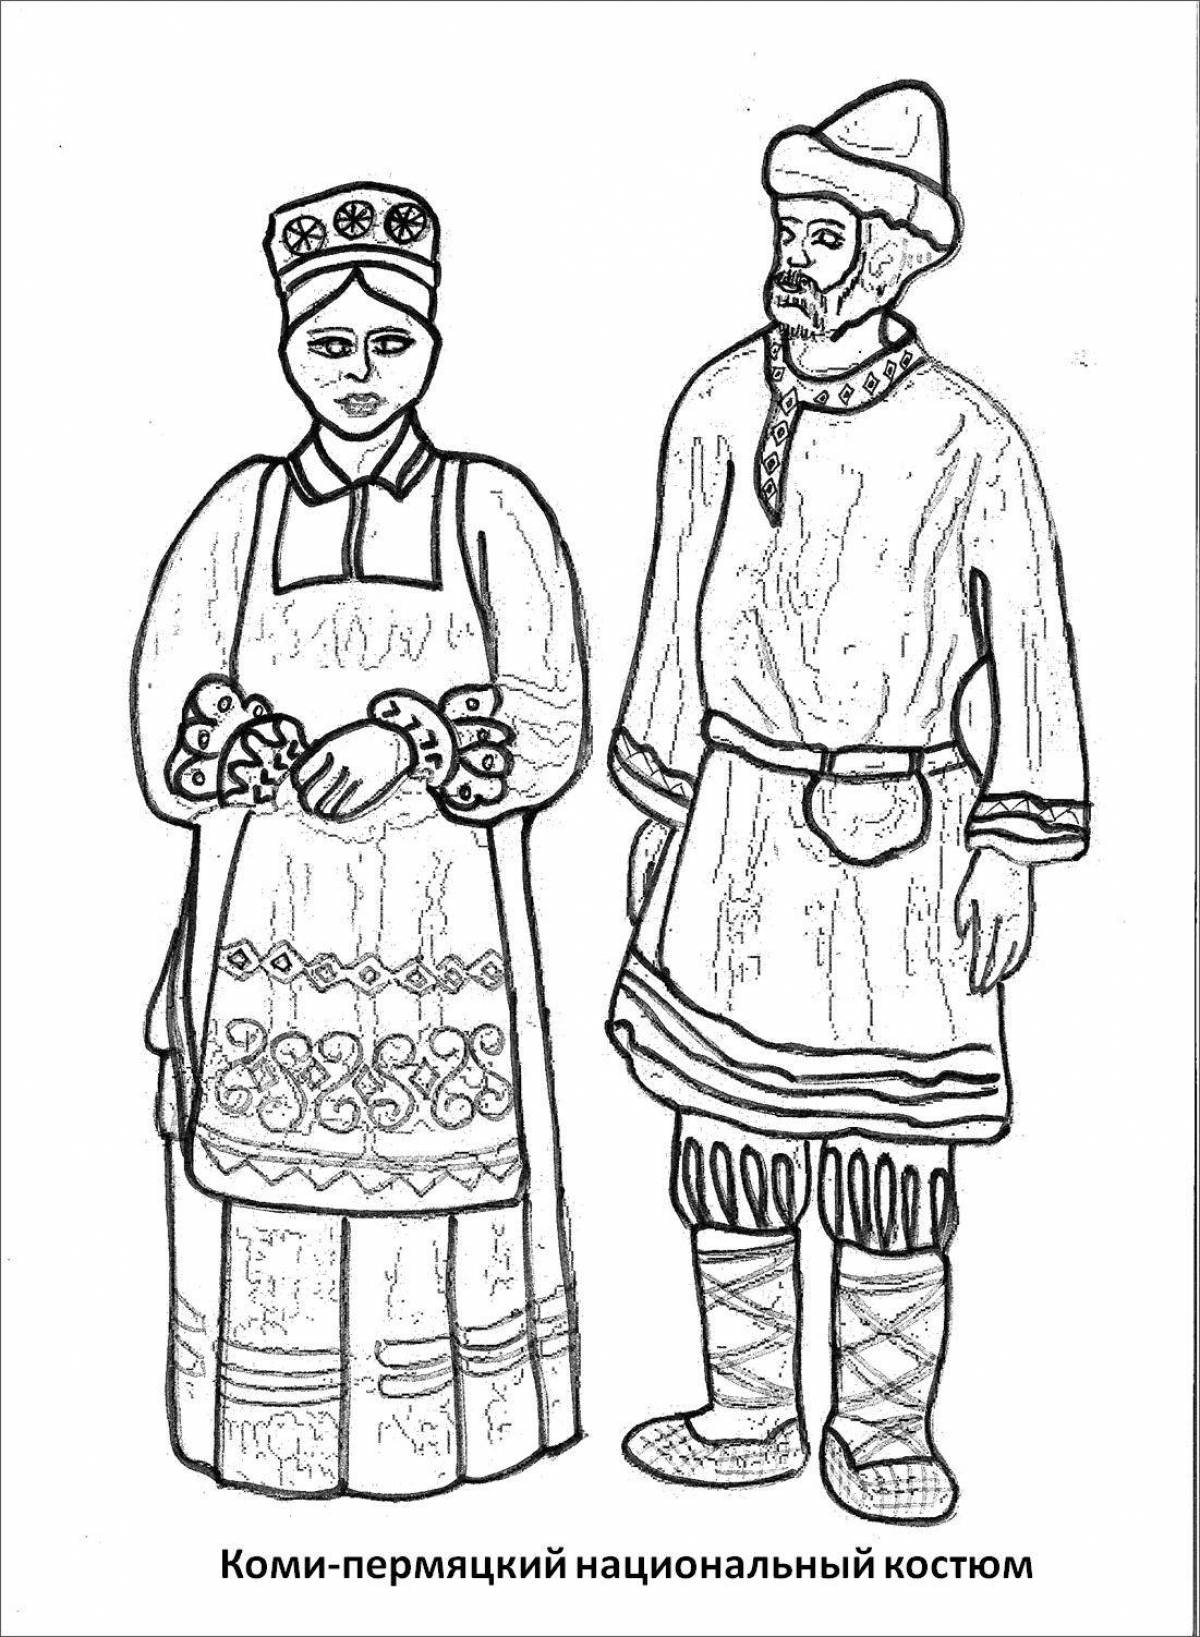 Коми-пермяки национальный костюм рисунок